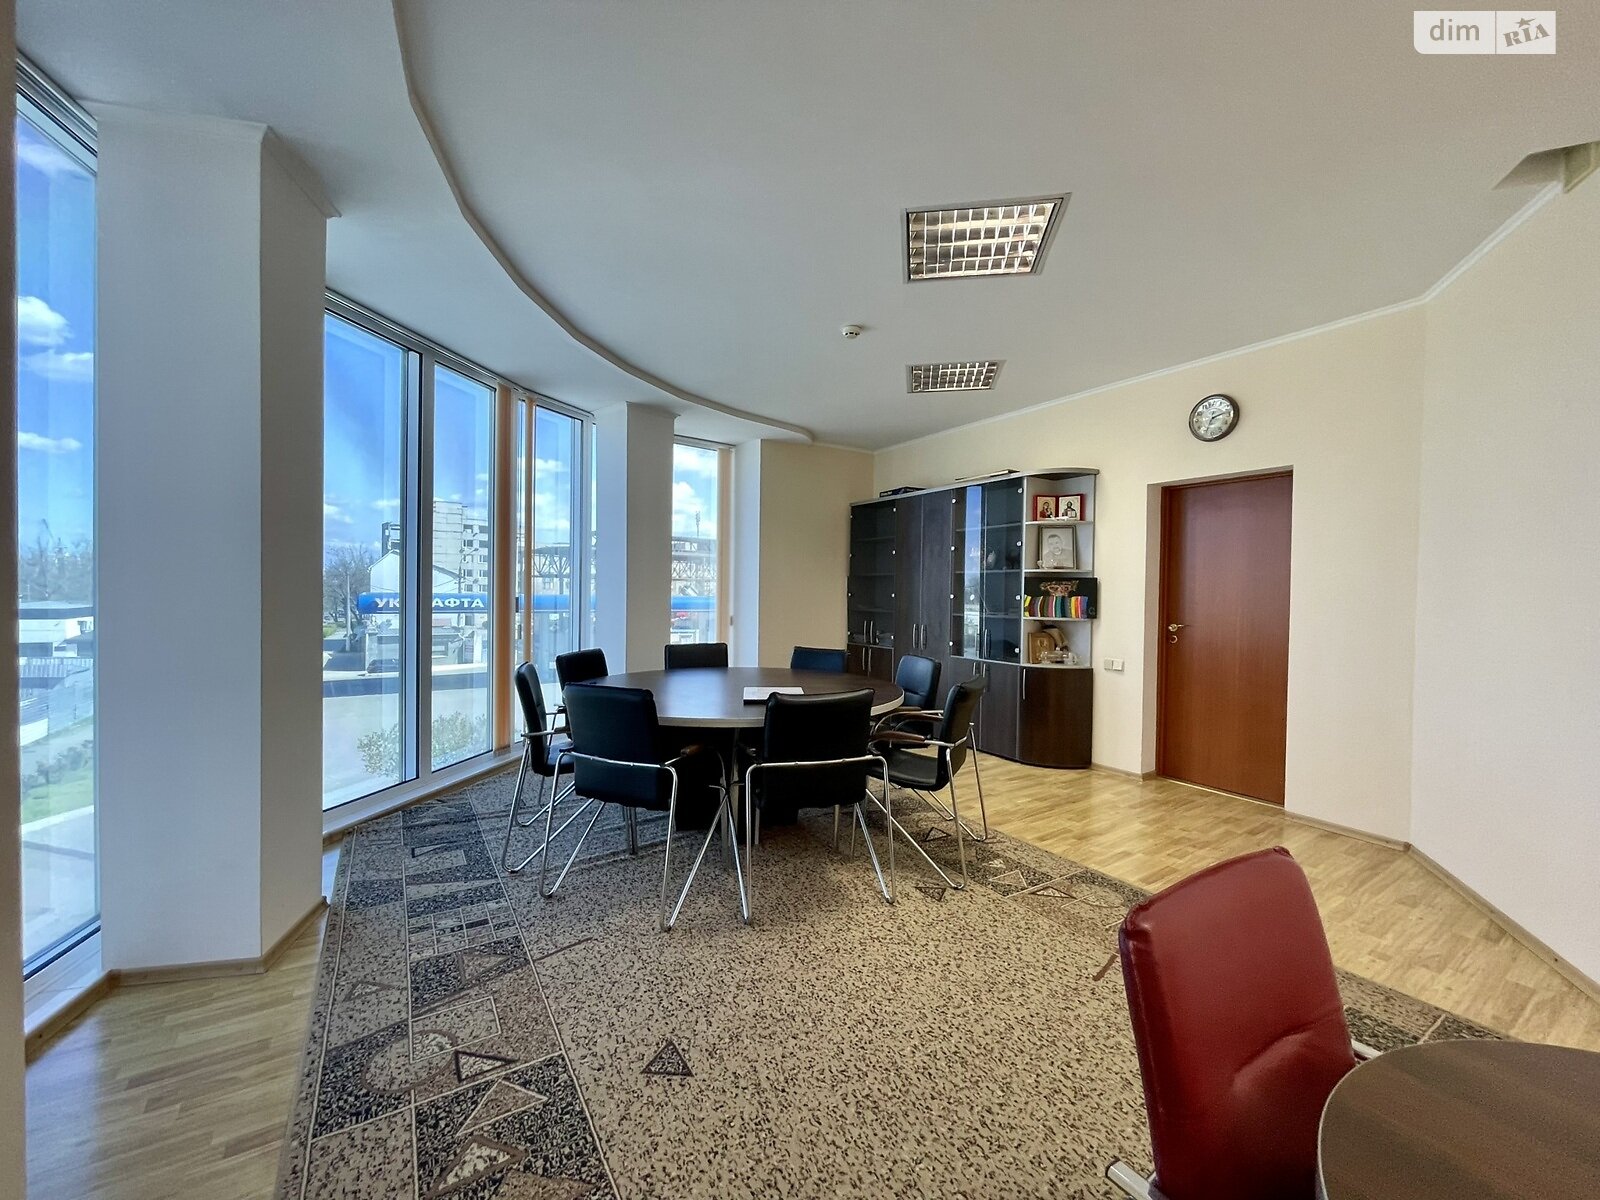 Аренда офисного помещения в Николаеве, Пограничная улица 29Б, помещений - 7, этаж - 2 фото 1